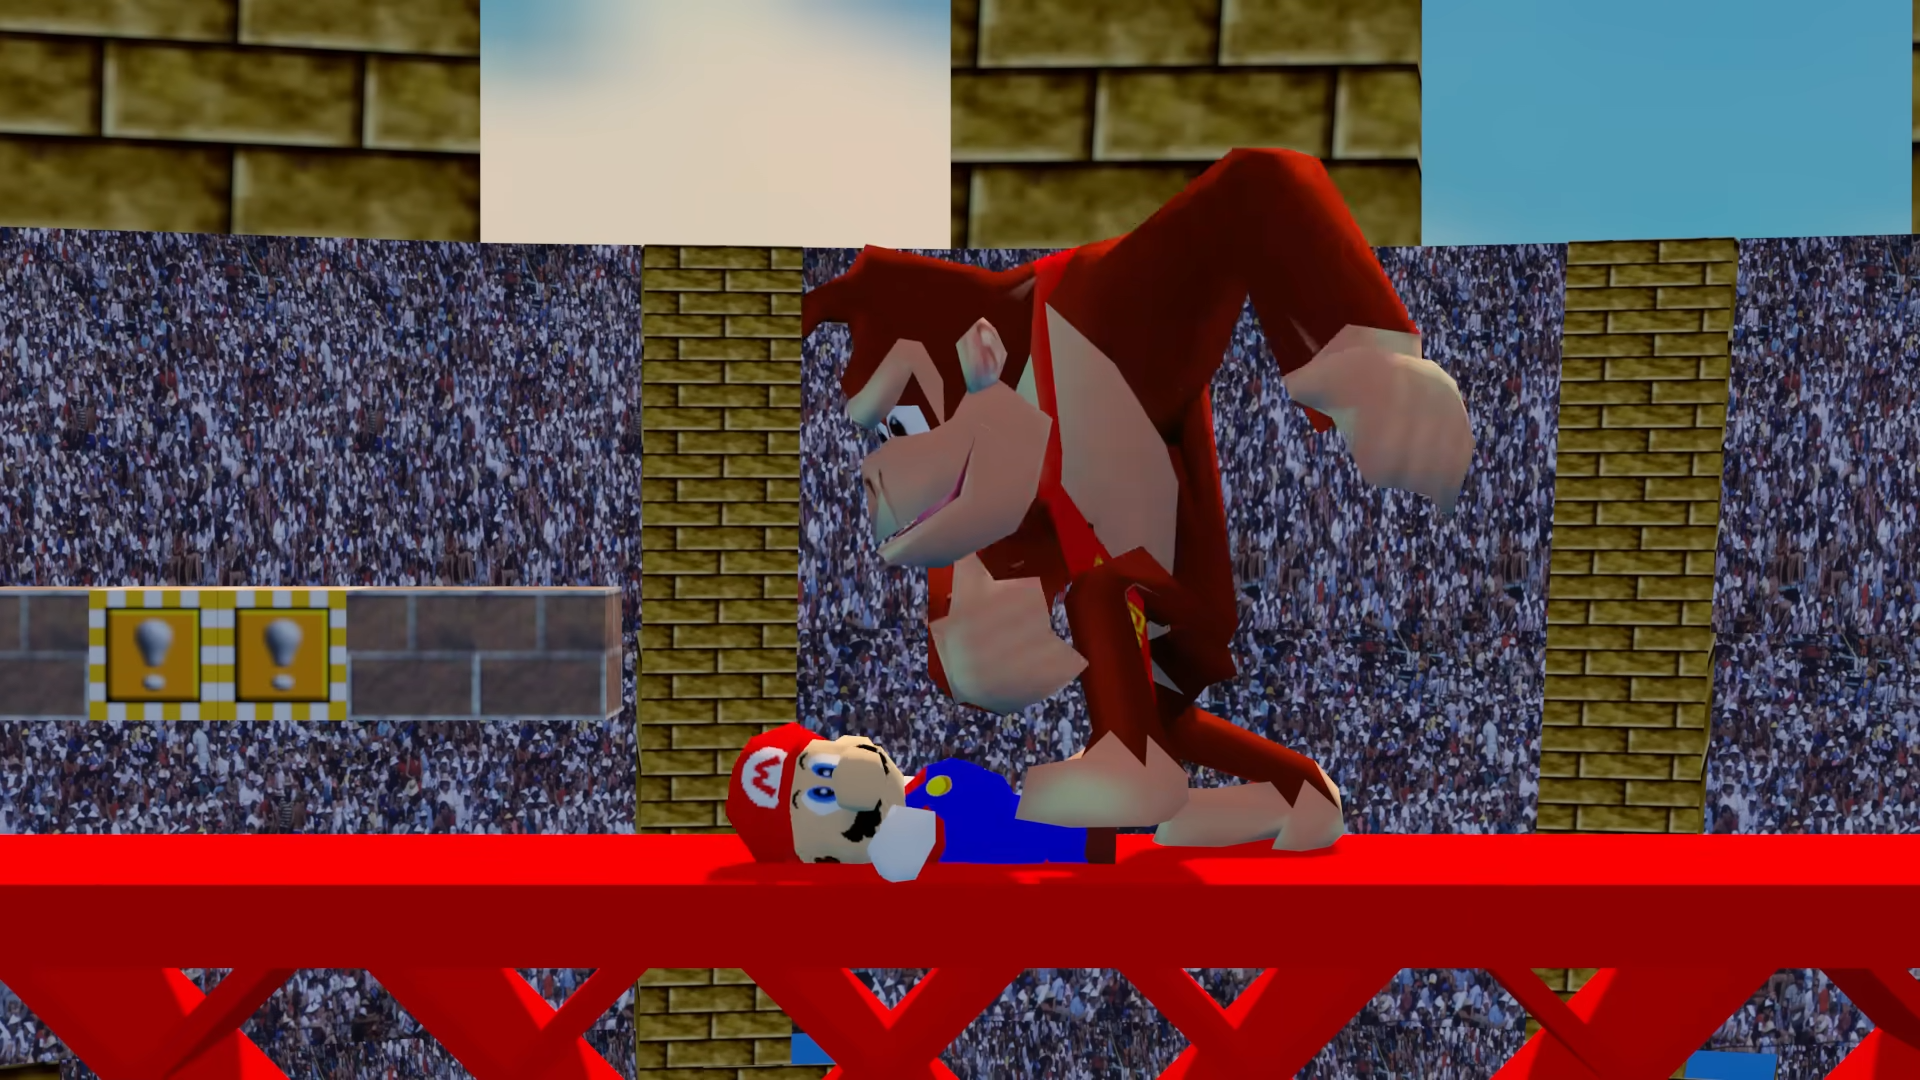 Inilah trailer film Super Mario Bros. yang dibuat ulang dengan grafis N64